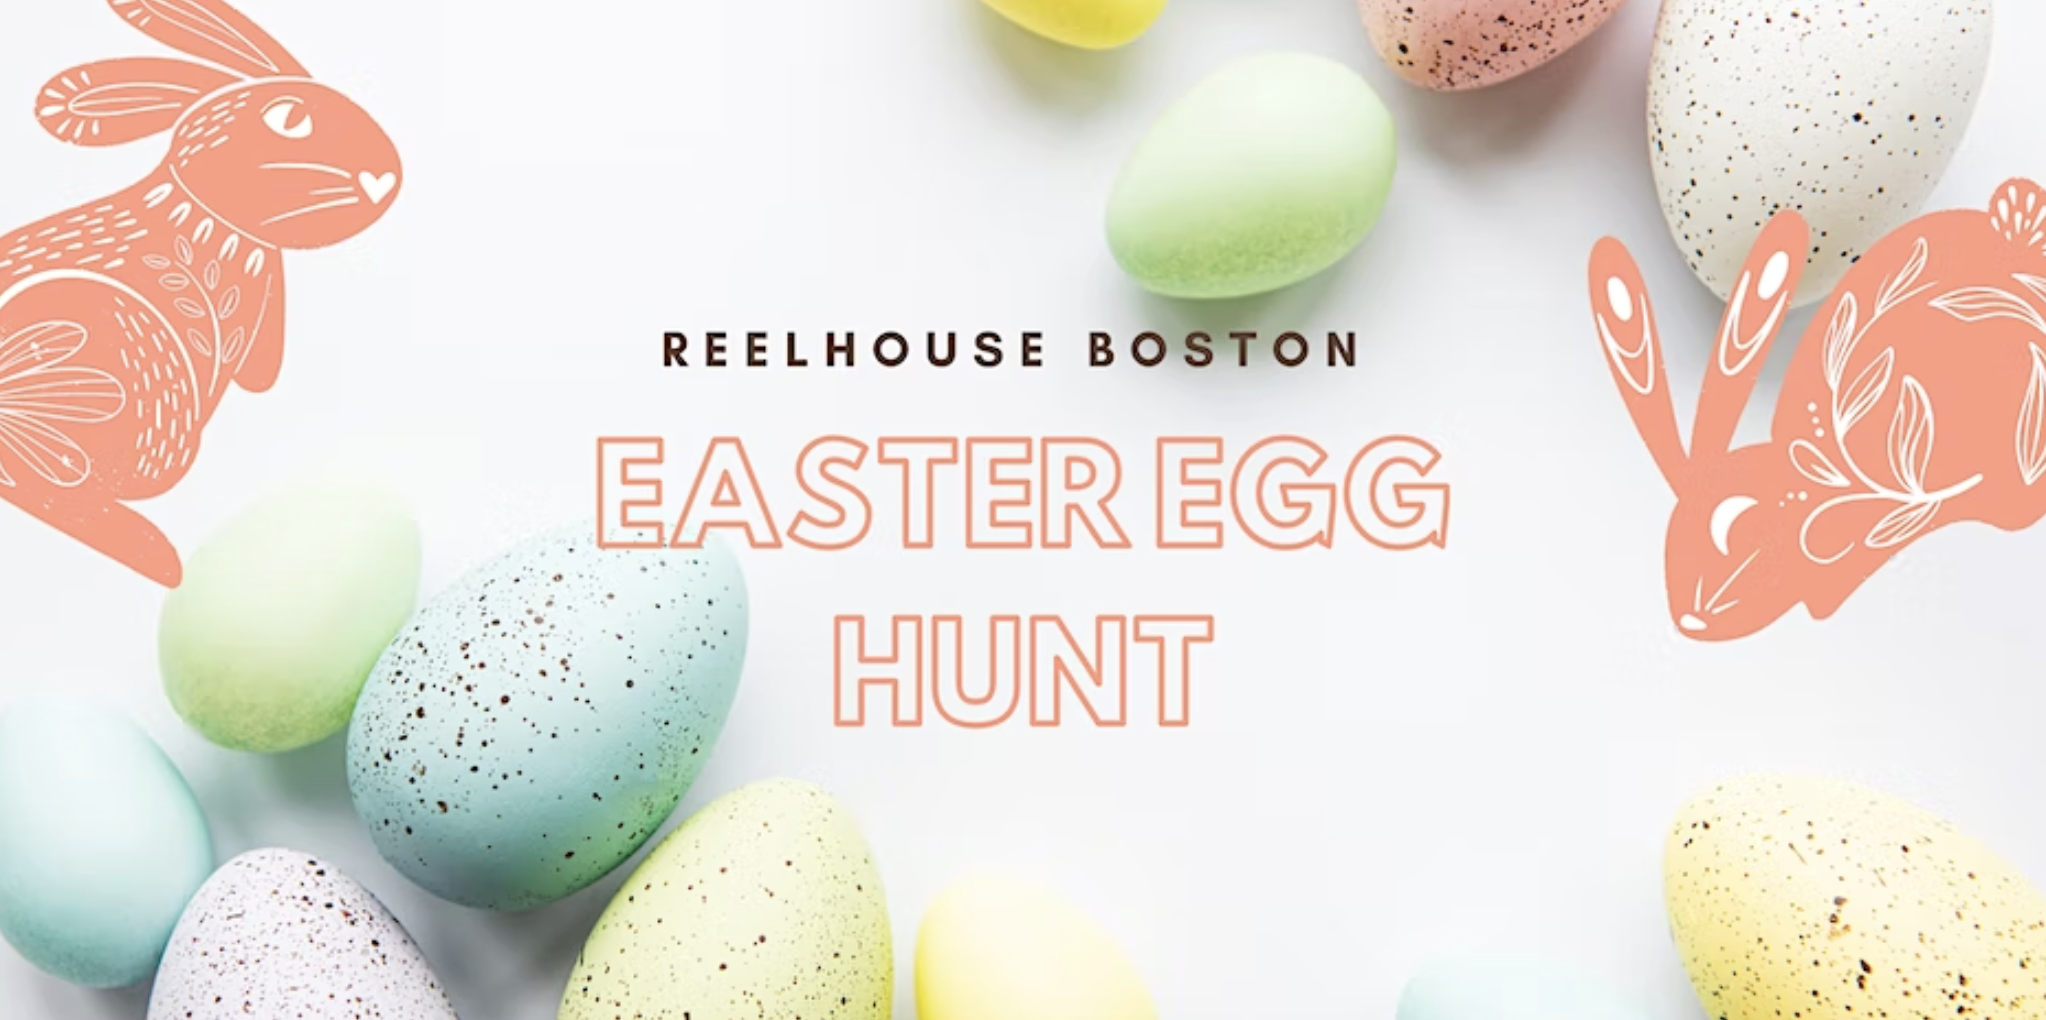 East Boston Easter Egg Hunt Boston Restaurant News and Events